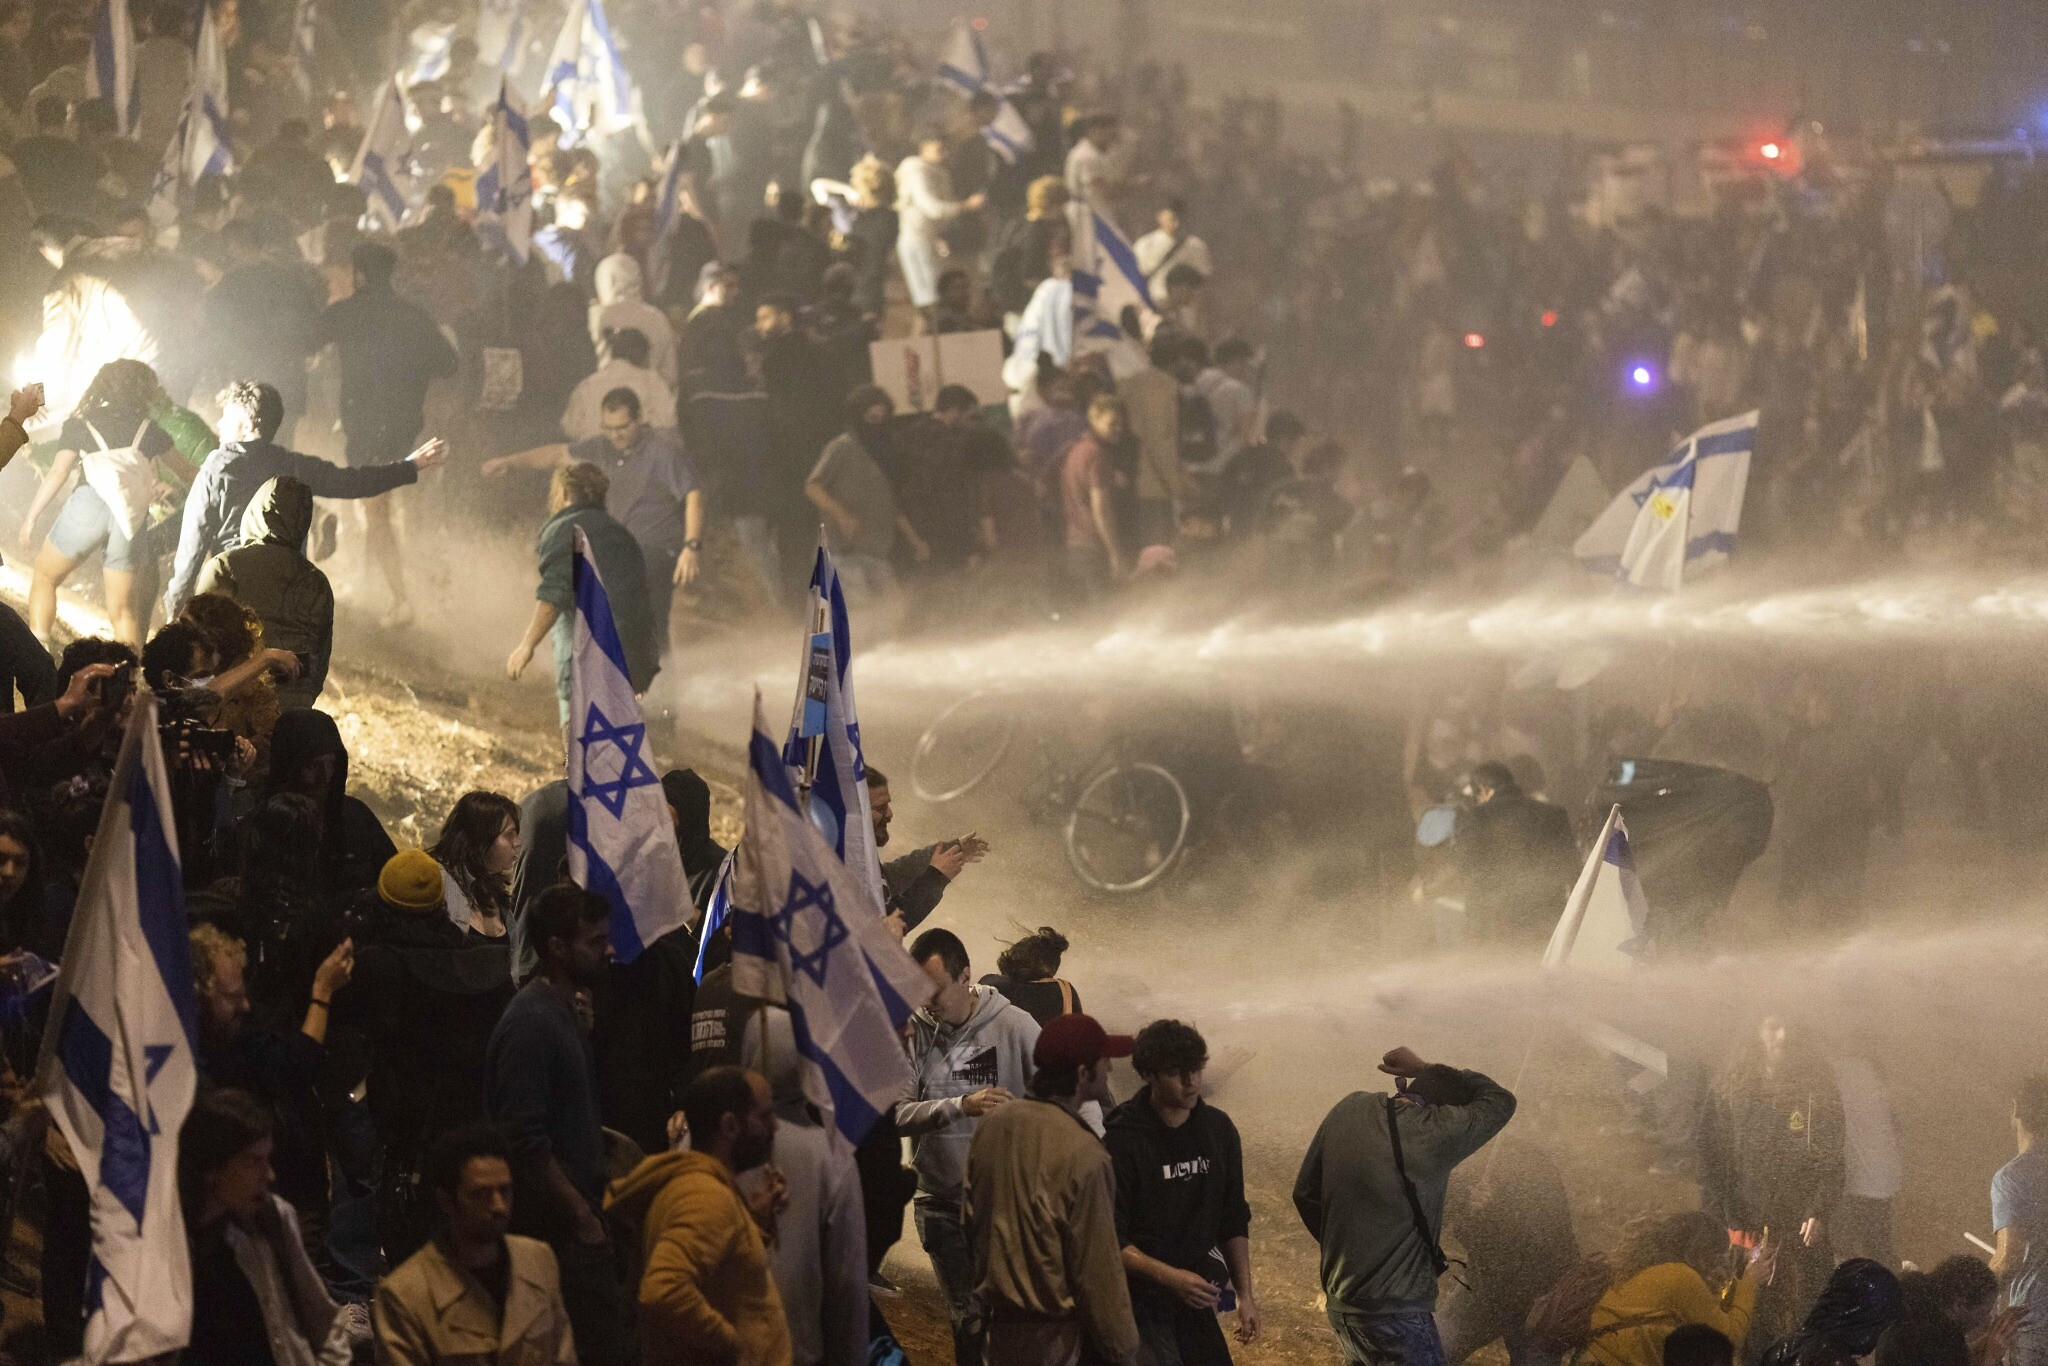 以色列27万人游行抗议高物价 政府承诺解决(图)-搜狐新闻